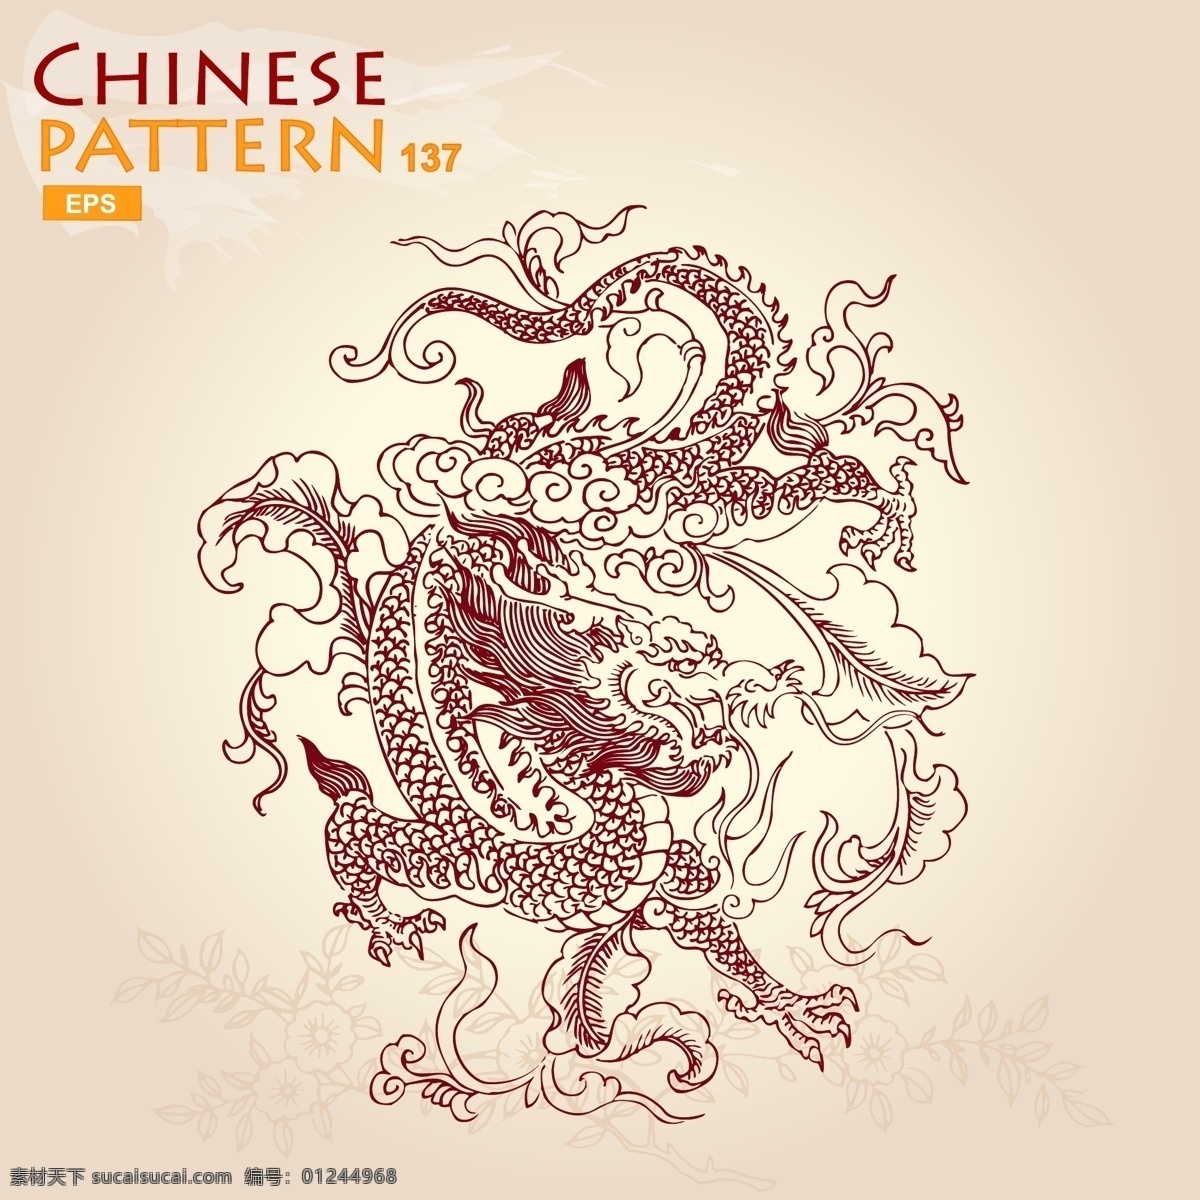 中国龙 矢量龙 卡通龙 手绘龙 龙插画 线条龙 龙速写 线描龙 龙线条 龙图腾 龙图案 动物 生物世界